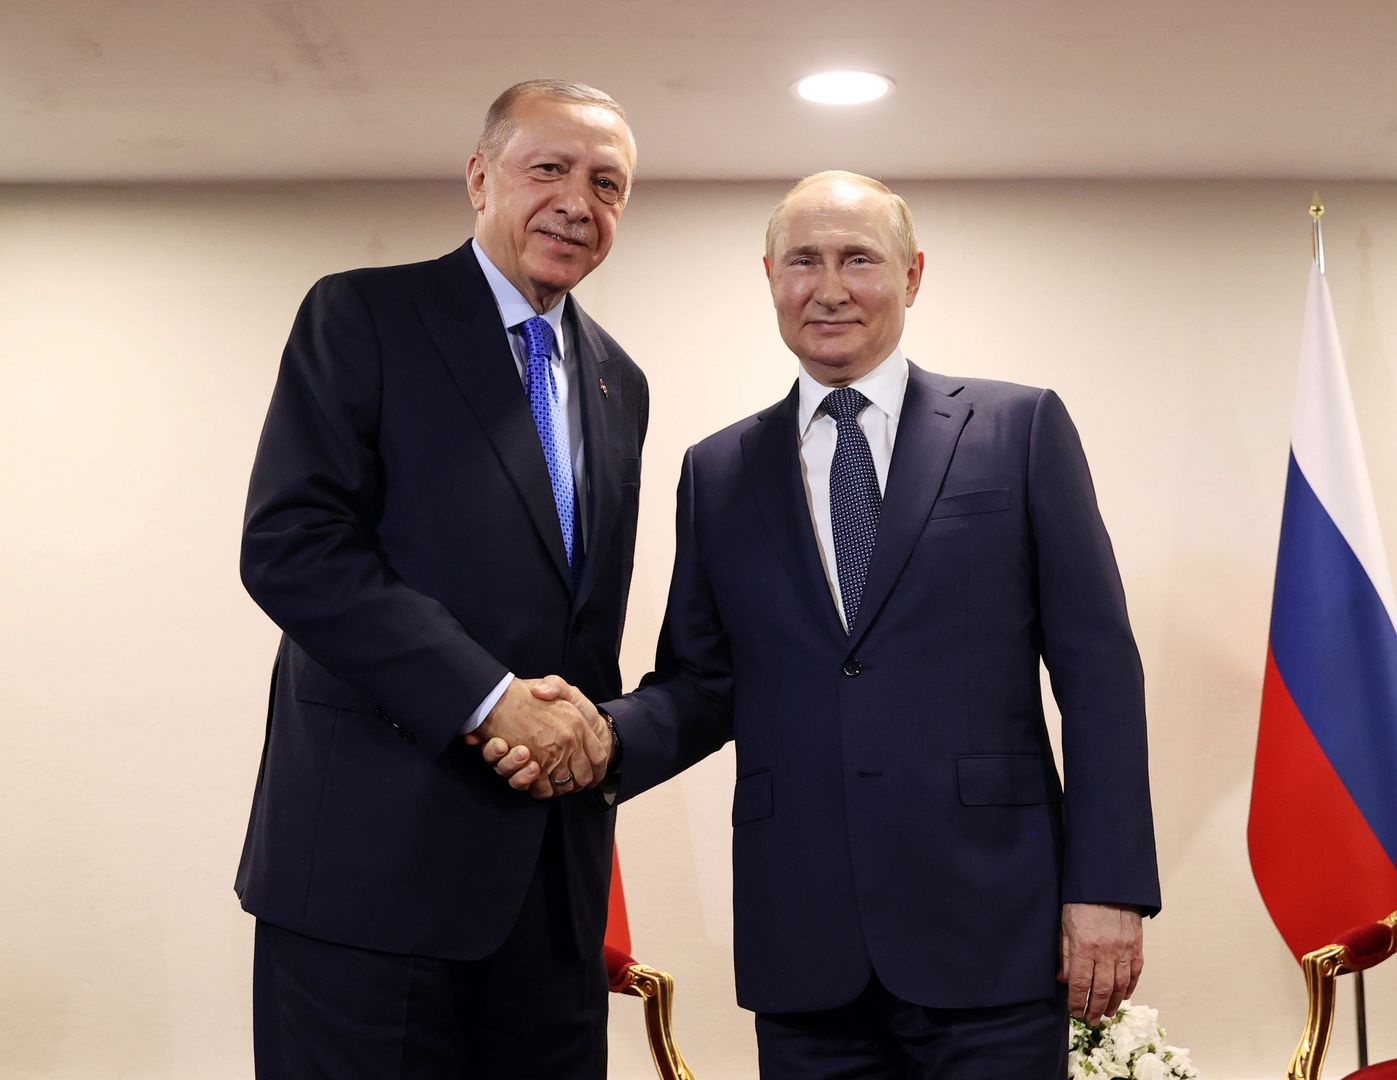 Erdogan odwiedzi Putina. Podano datę, miejsce i cel spotkania